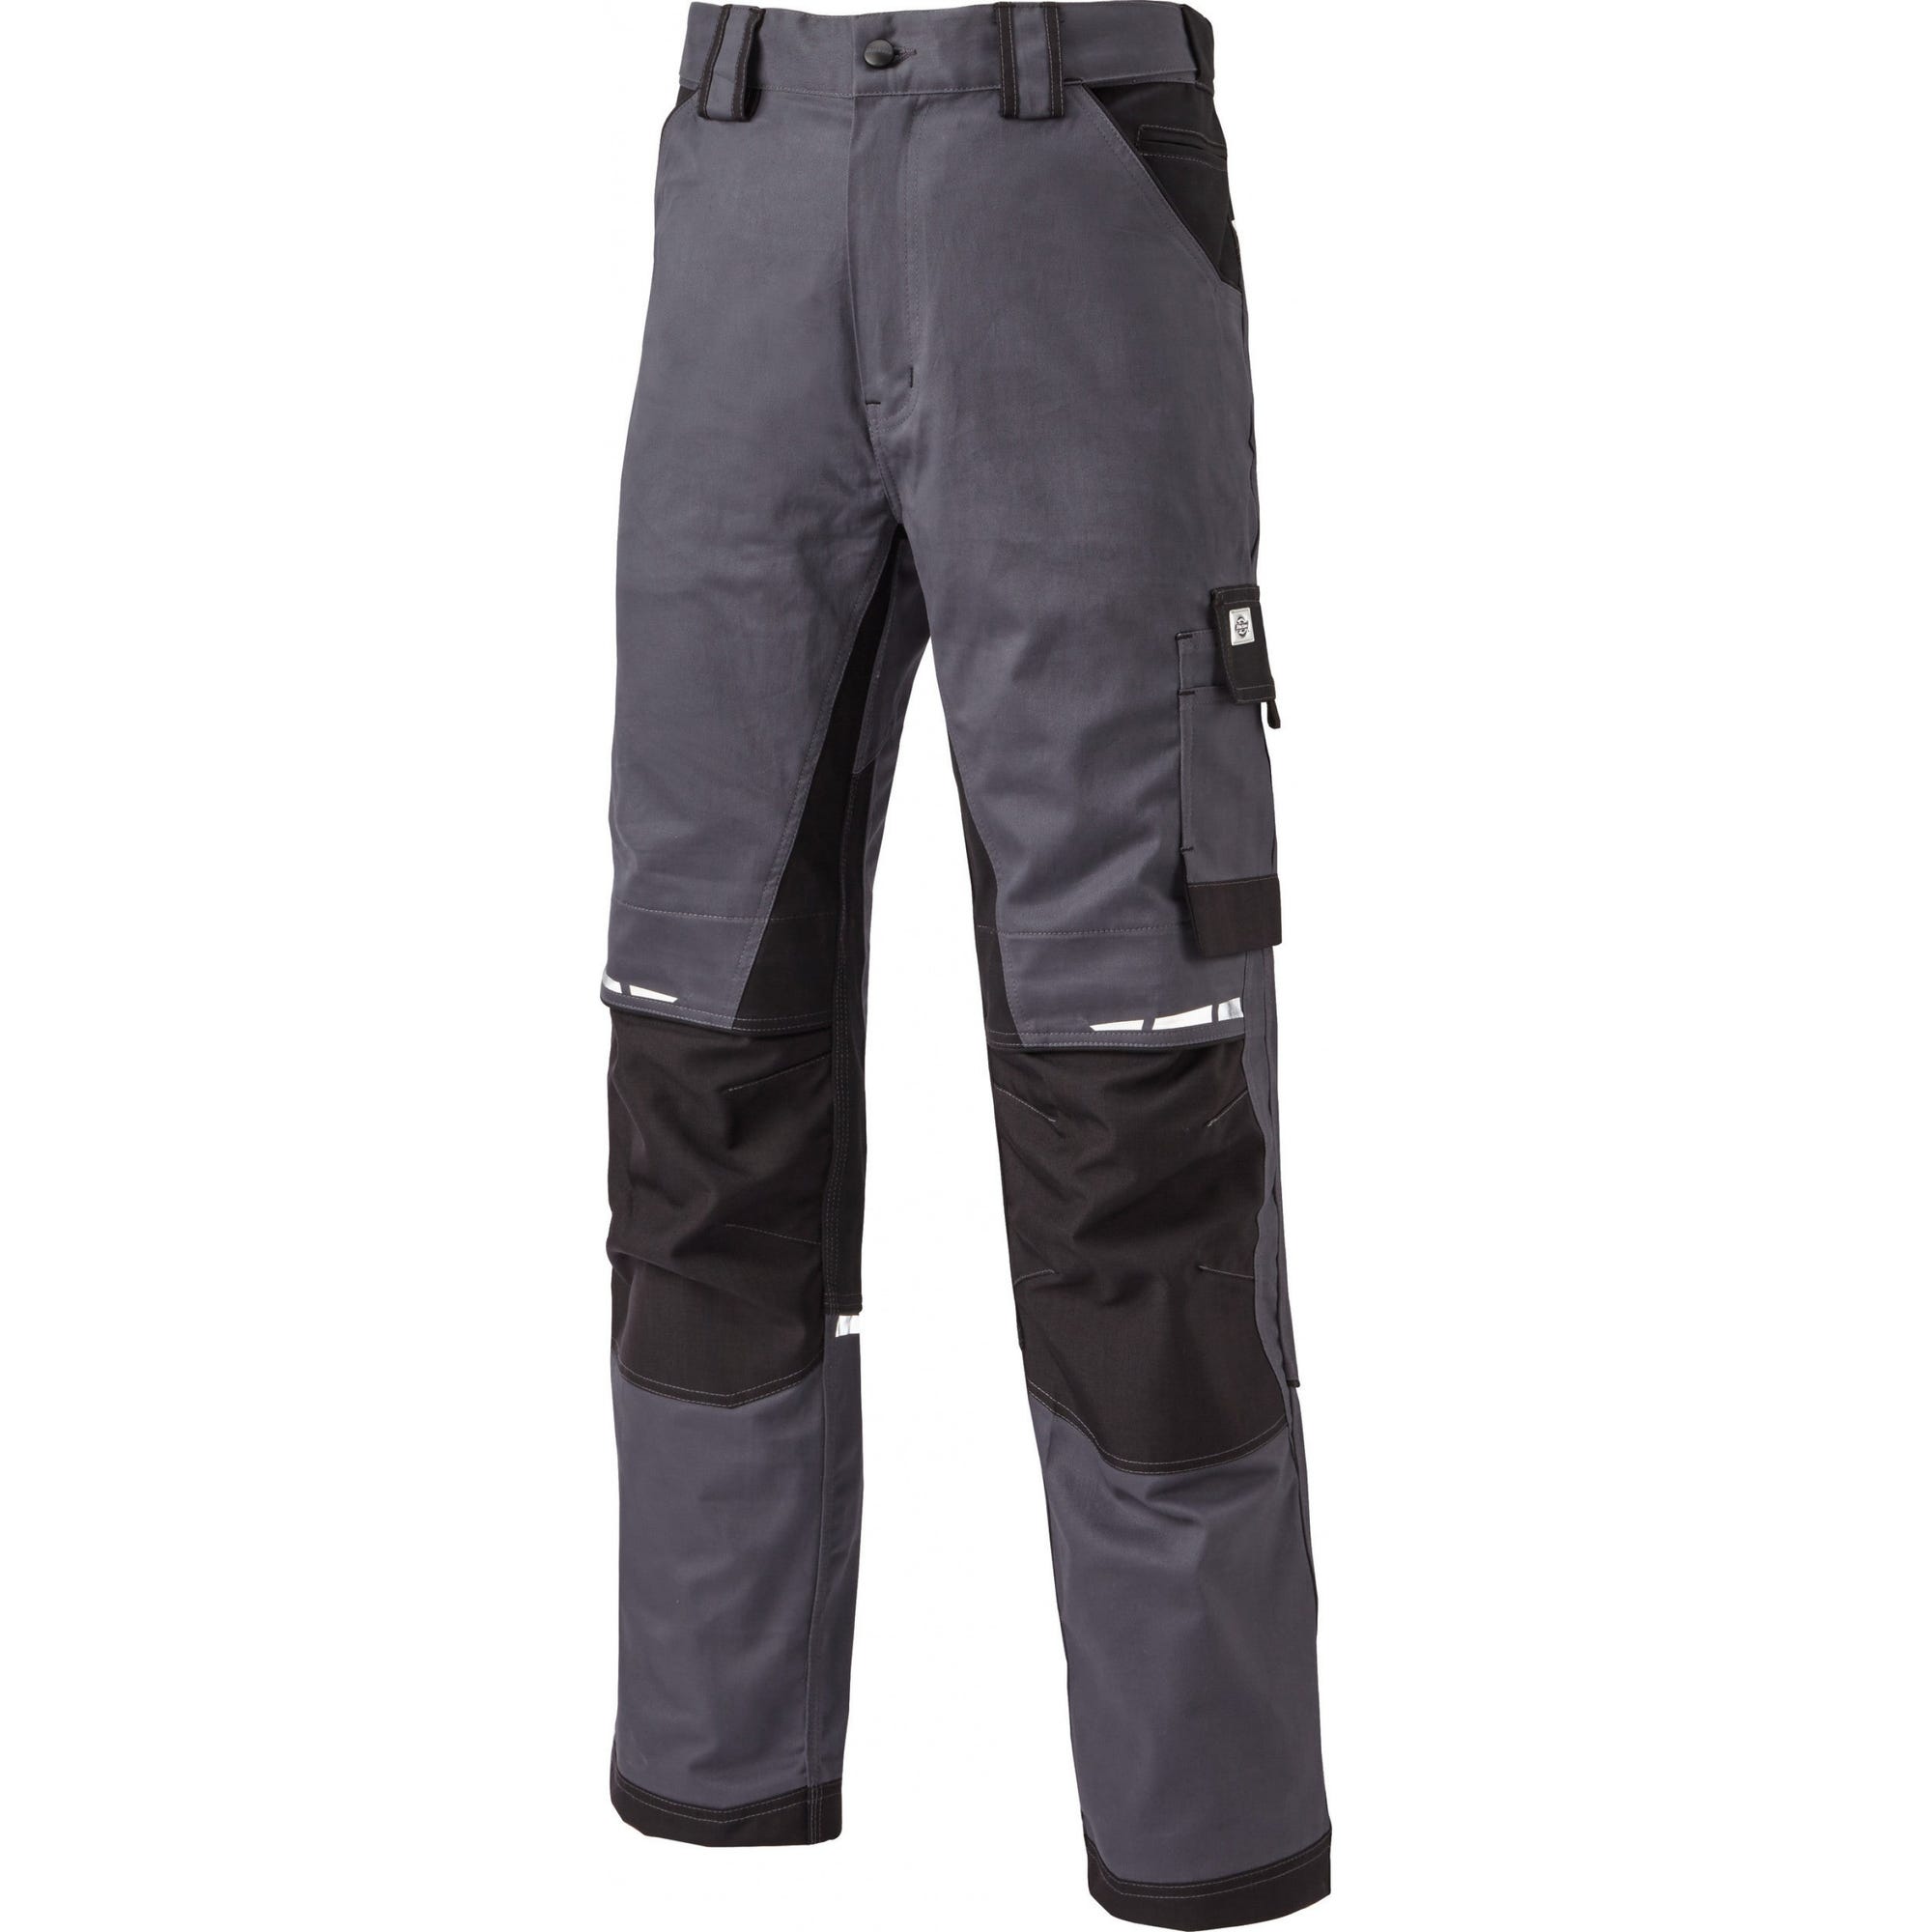 Pantalon de travail GDT Premium gris/noir - Dickies - Taille 50 5